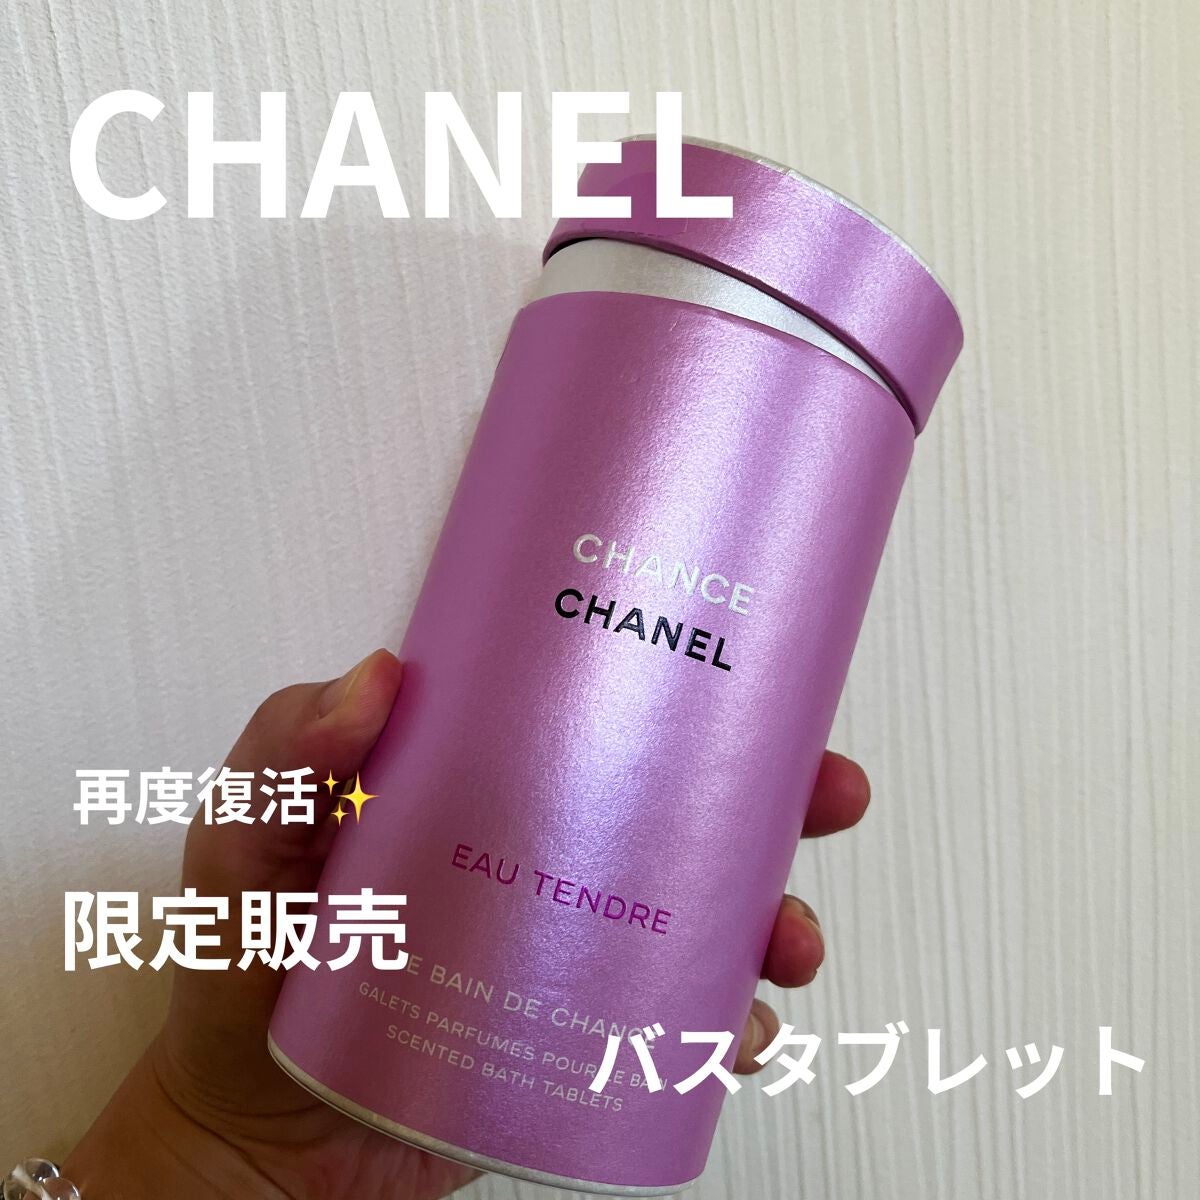 【特別限定品】新品 CHANEL入浴剤 チャンスオータンドゥル バスタブレット